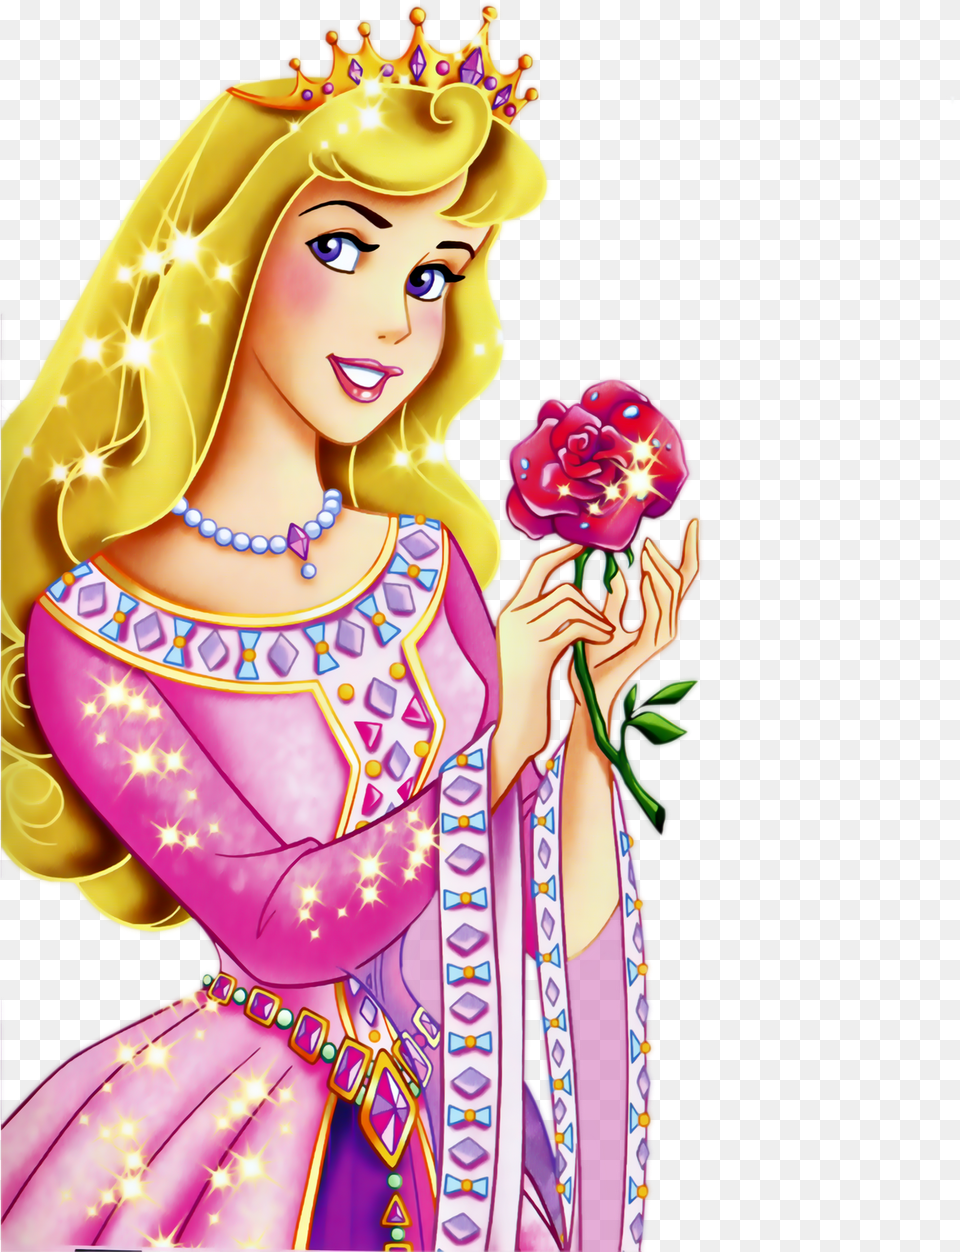 Princesa De Disney, Adult, Person, Woman, Female Free Transparent Png